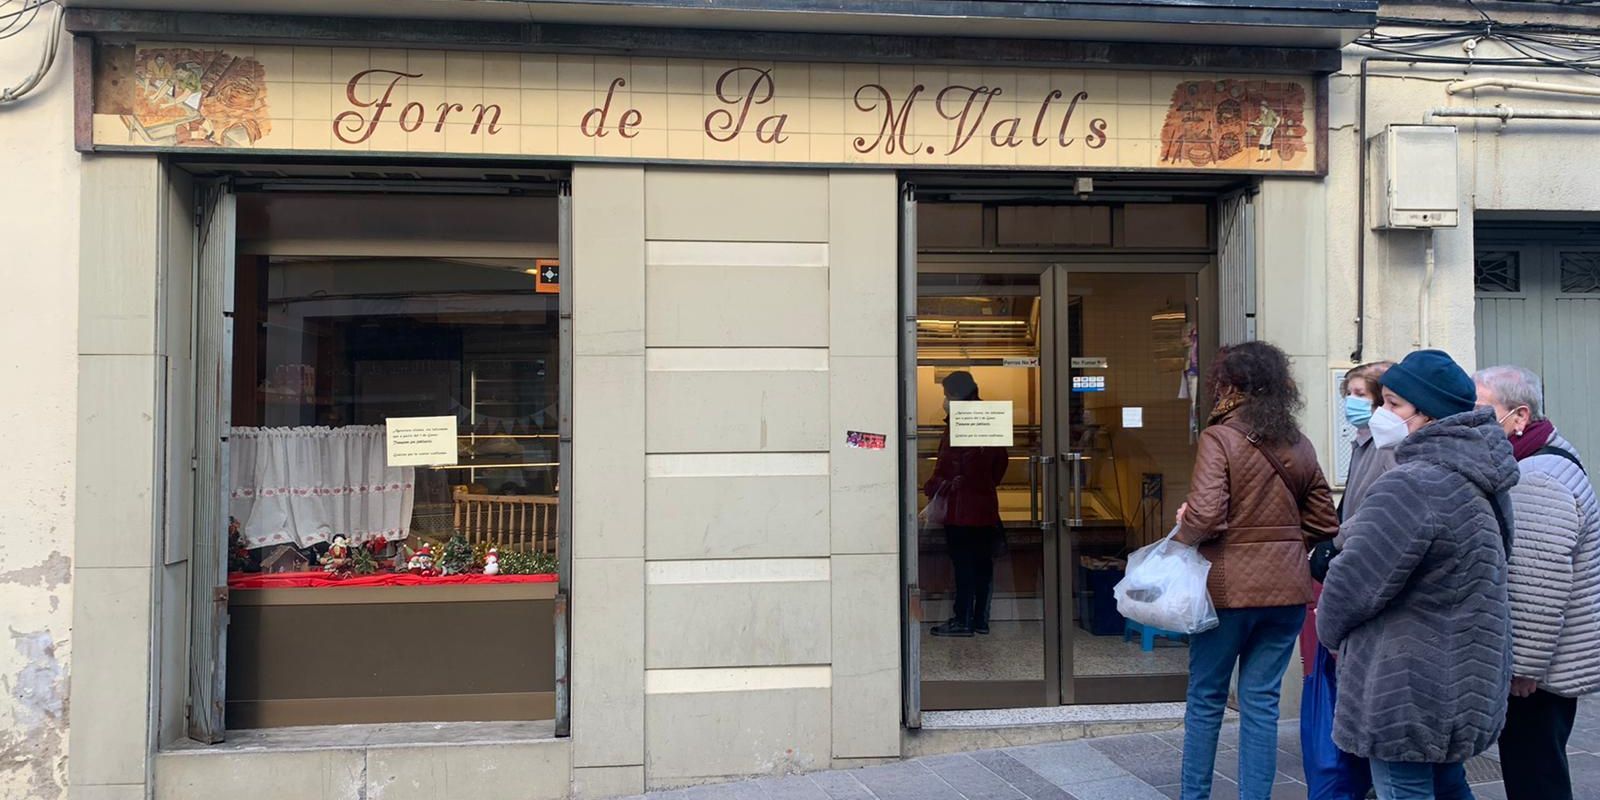 L’històric forn de pa M. Valls, ubicat al carrer Major, va tancar el 2021 després d’un segle d’activitat per jubilació.